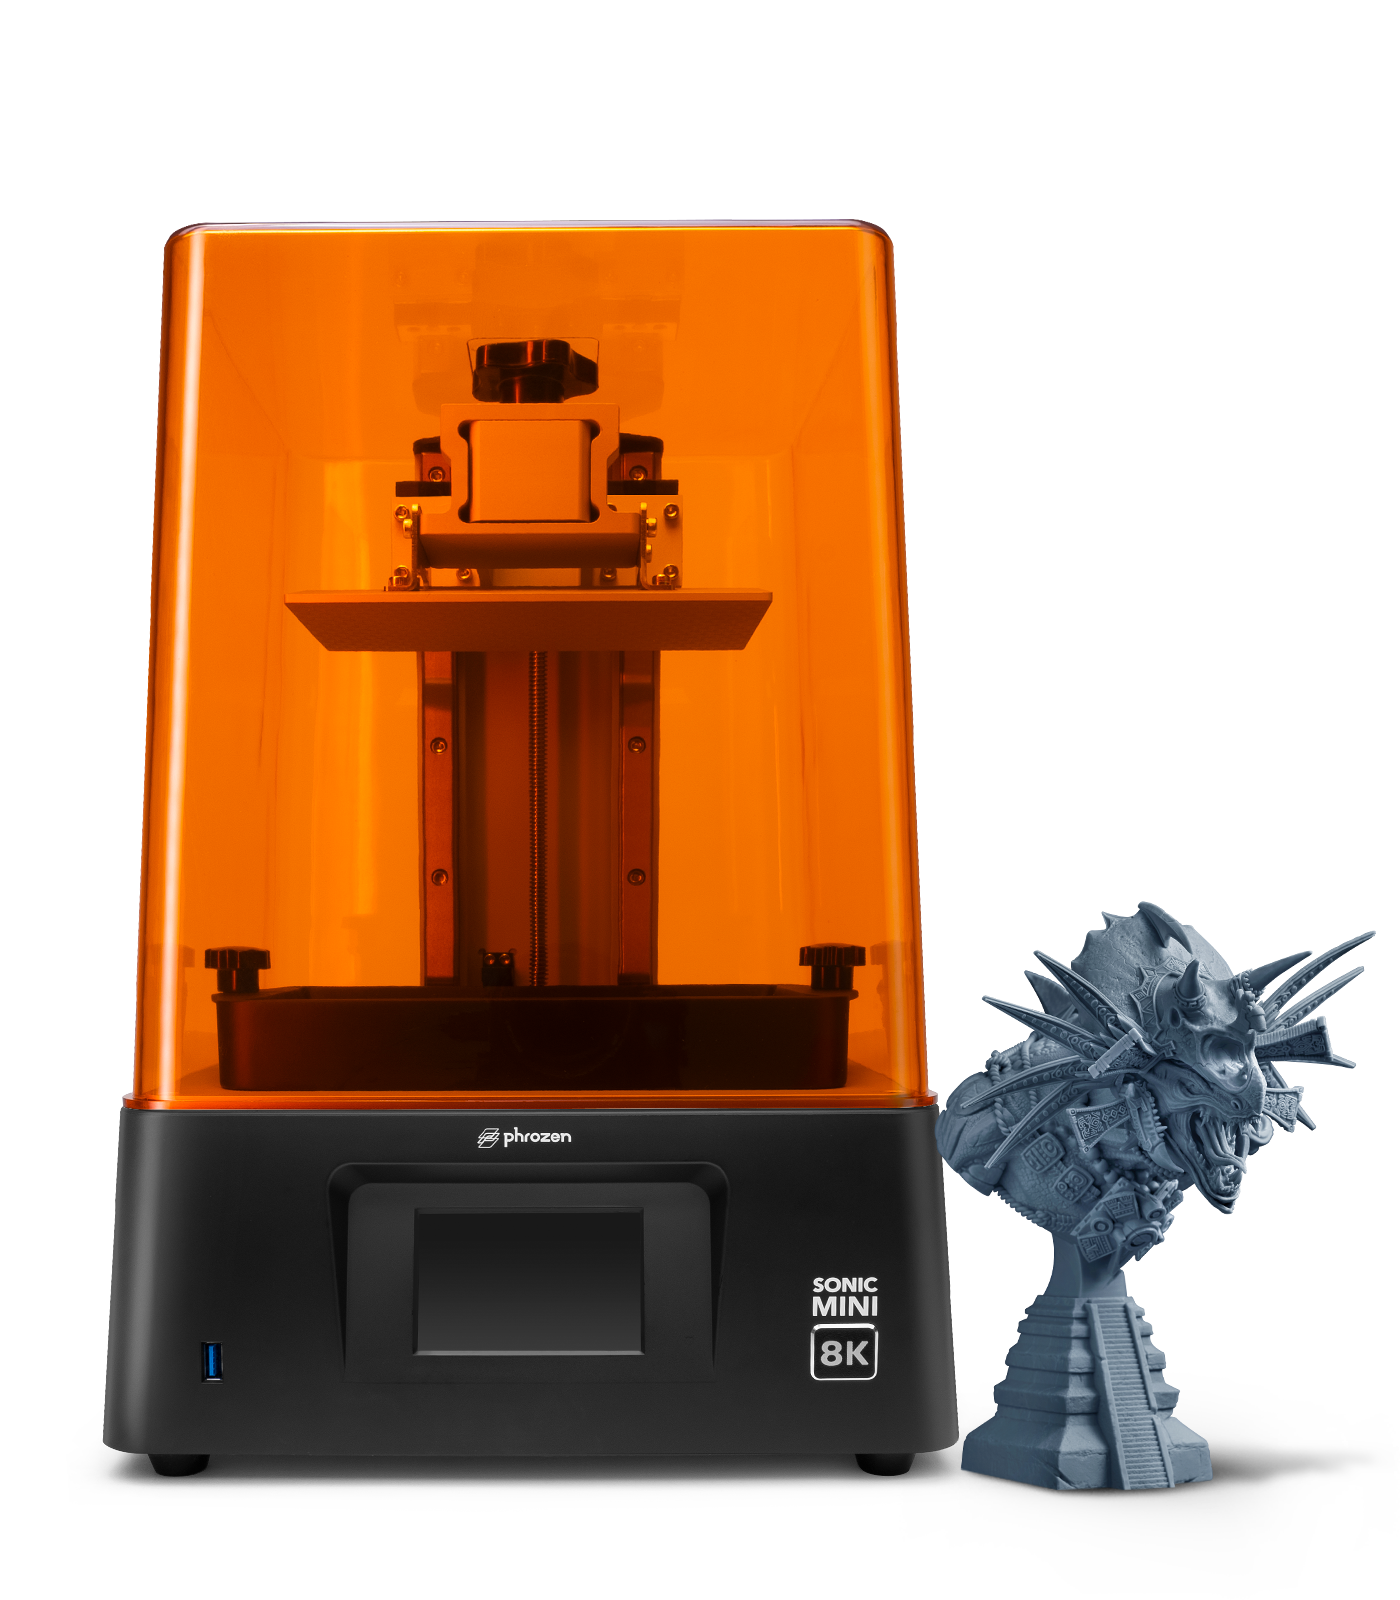 Phrozen Sonic Resin 8K 3D Printer | Phrozen Technology: Resin 3D Printer